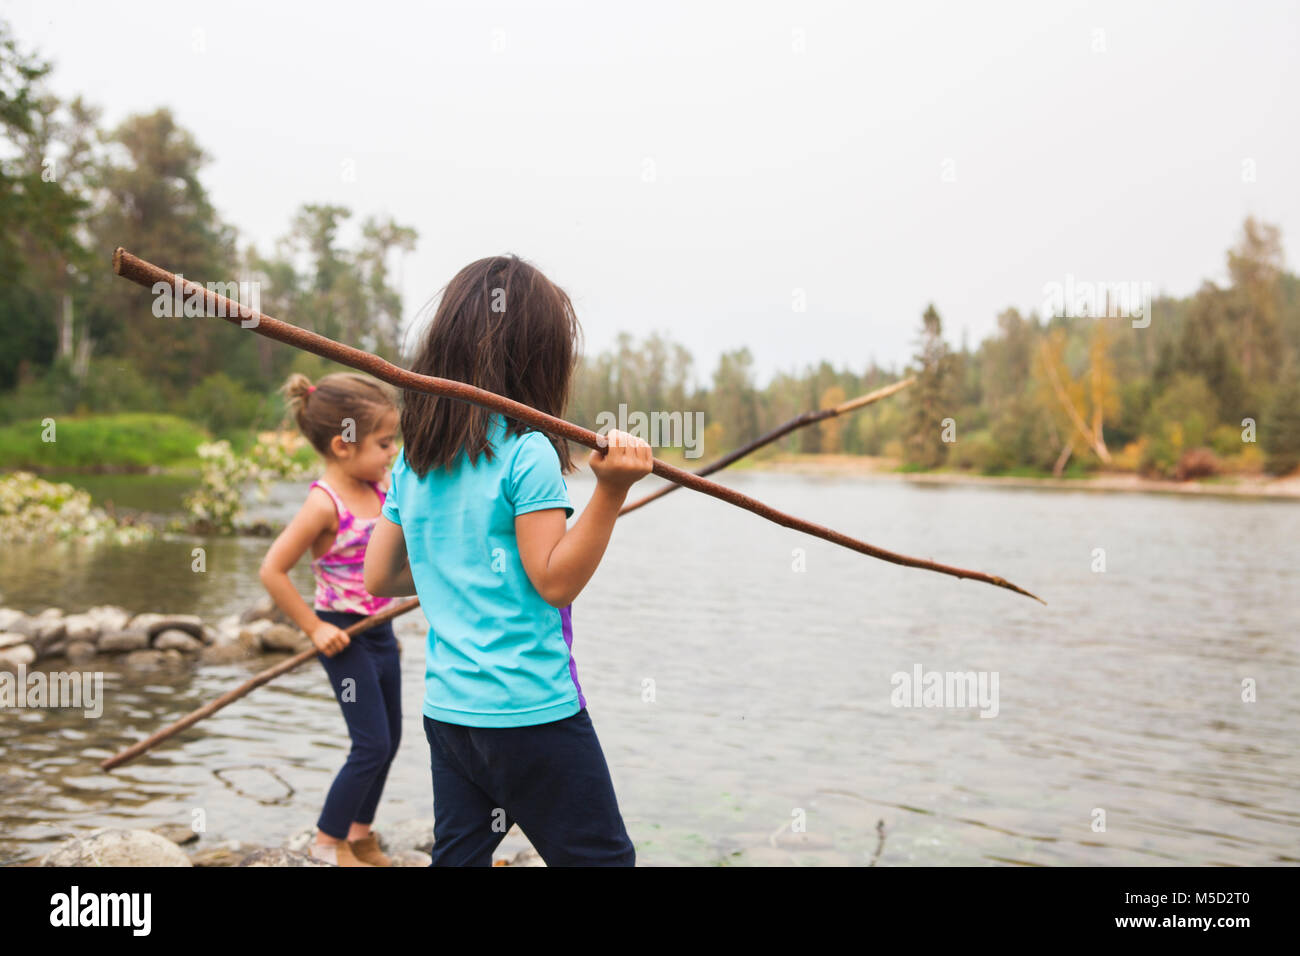 Girls fishing with sticks at lake Stock Photo